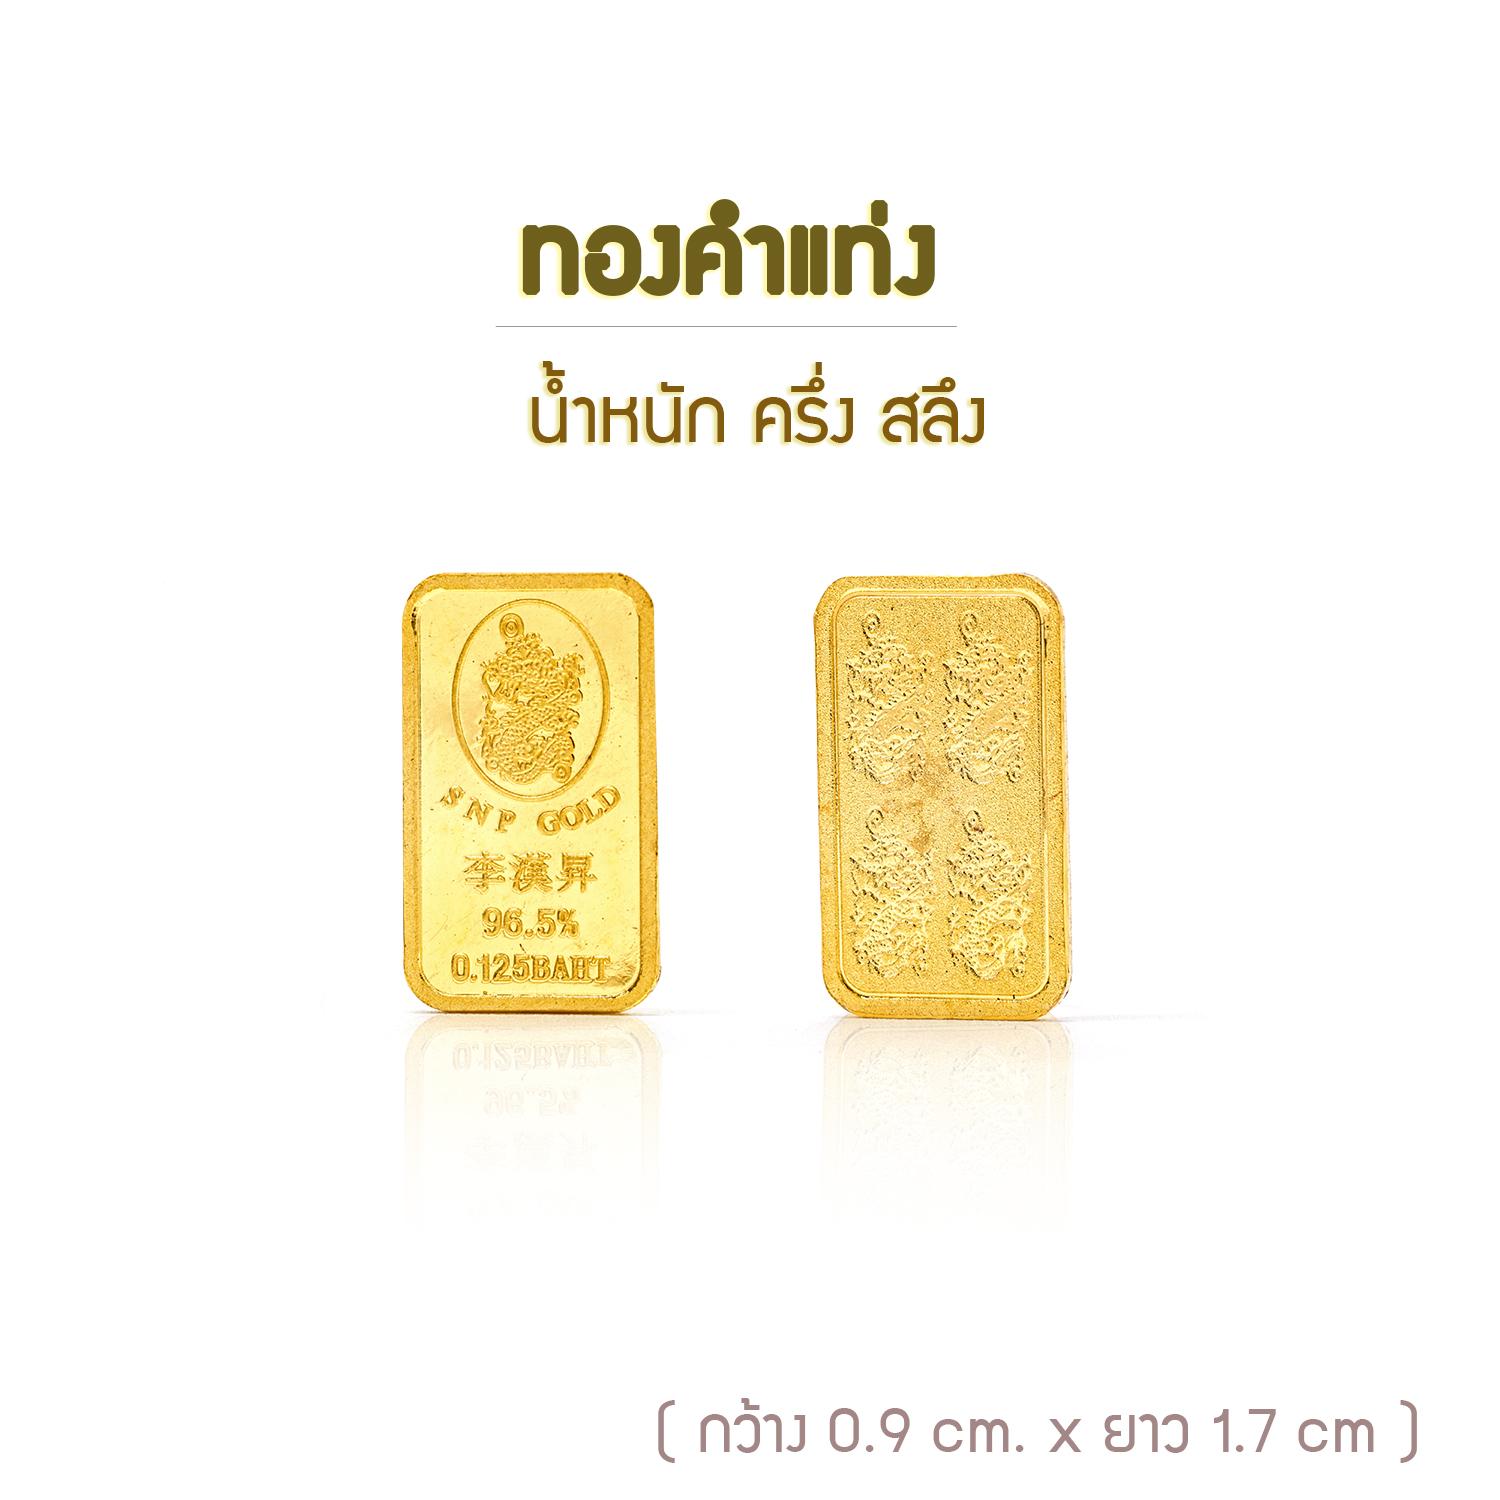 ซิงแสงนภา ทองคำแท่ง(ครึ่งสลึง) 1.9 กรัม (ทองคำแท้ 96.5%) พร้อมใบรับประกันทอง